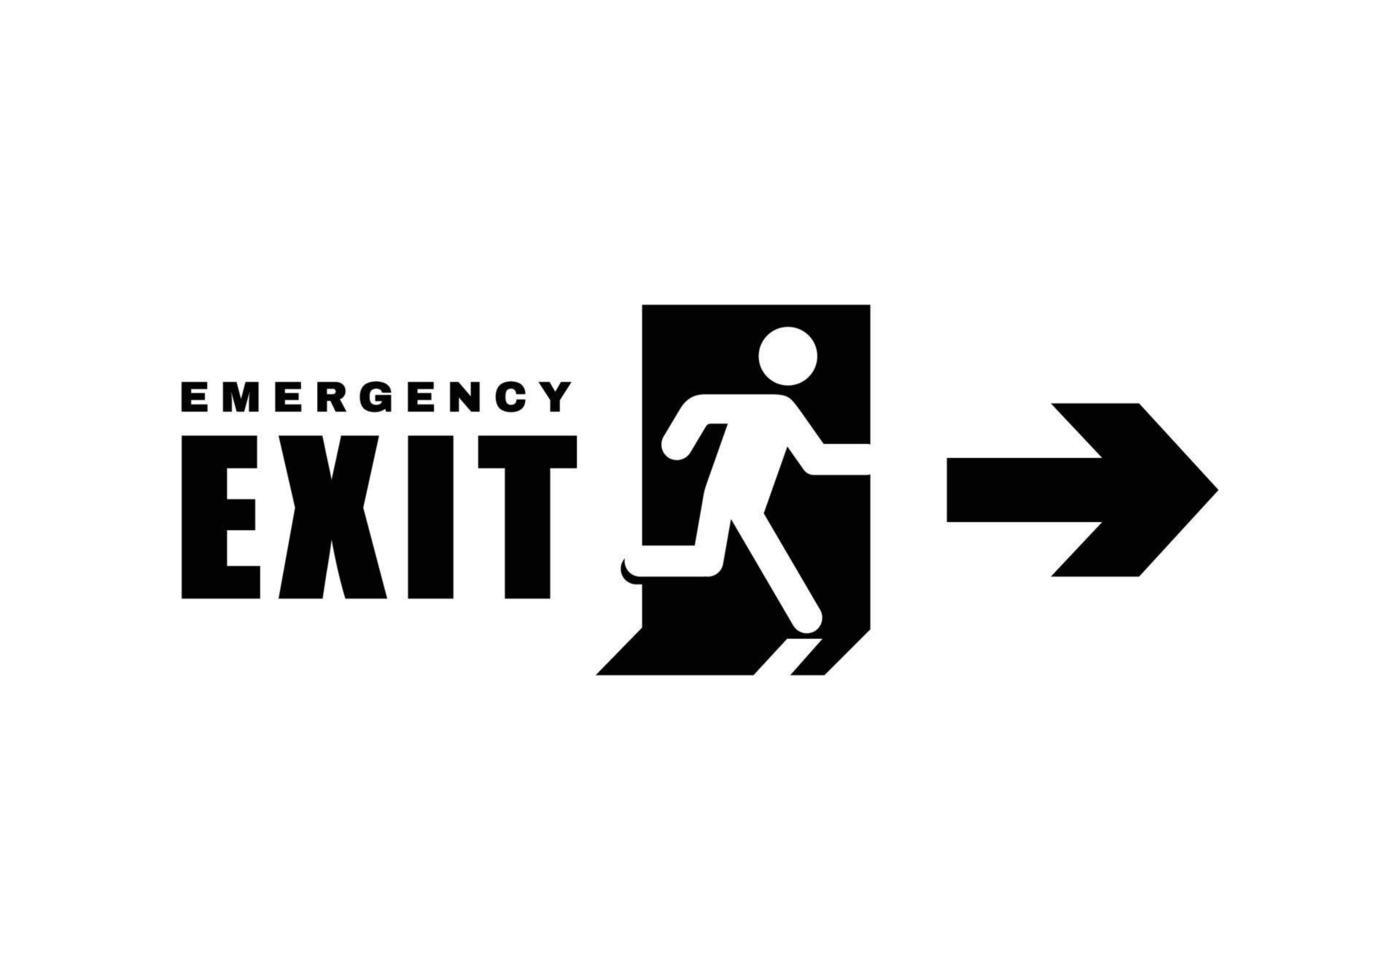 Exit door symbol. Evacuation symbol vector